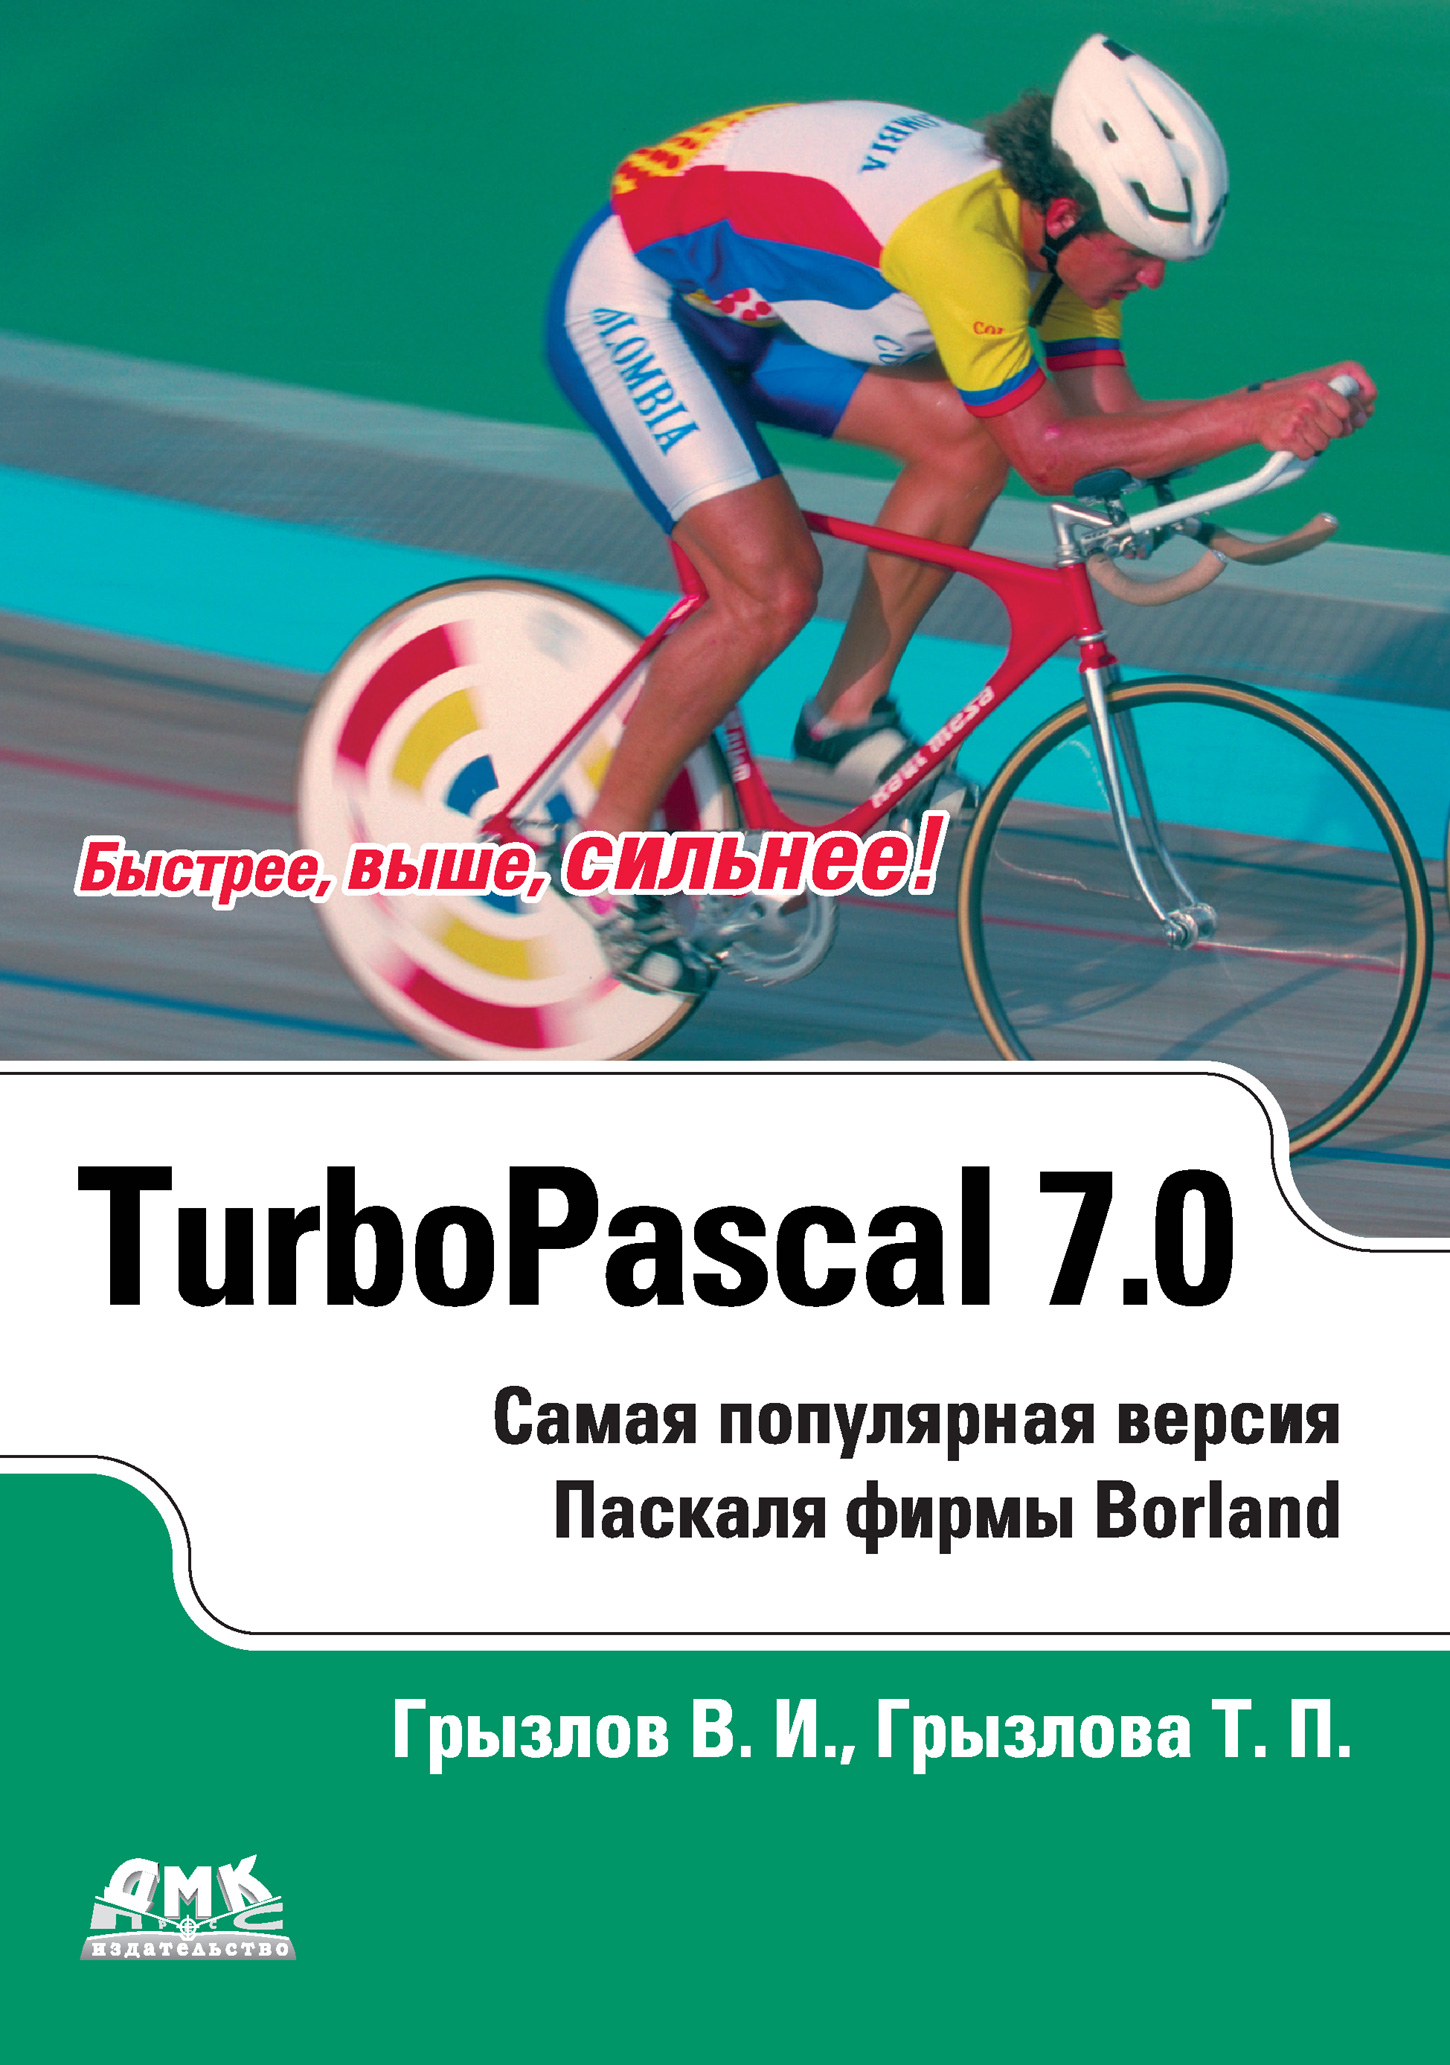 Книга  Турбо Паскаль 7.0 созданная Т. П. Грызлова, В. И. Грызлов может относится к жанру программирование. Стоимость электронной книги Турбо Паскаль 7.0 с идентификатором 635105 составляет 239.00 руб.